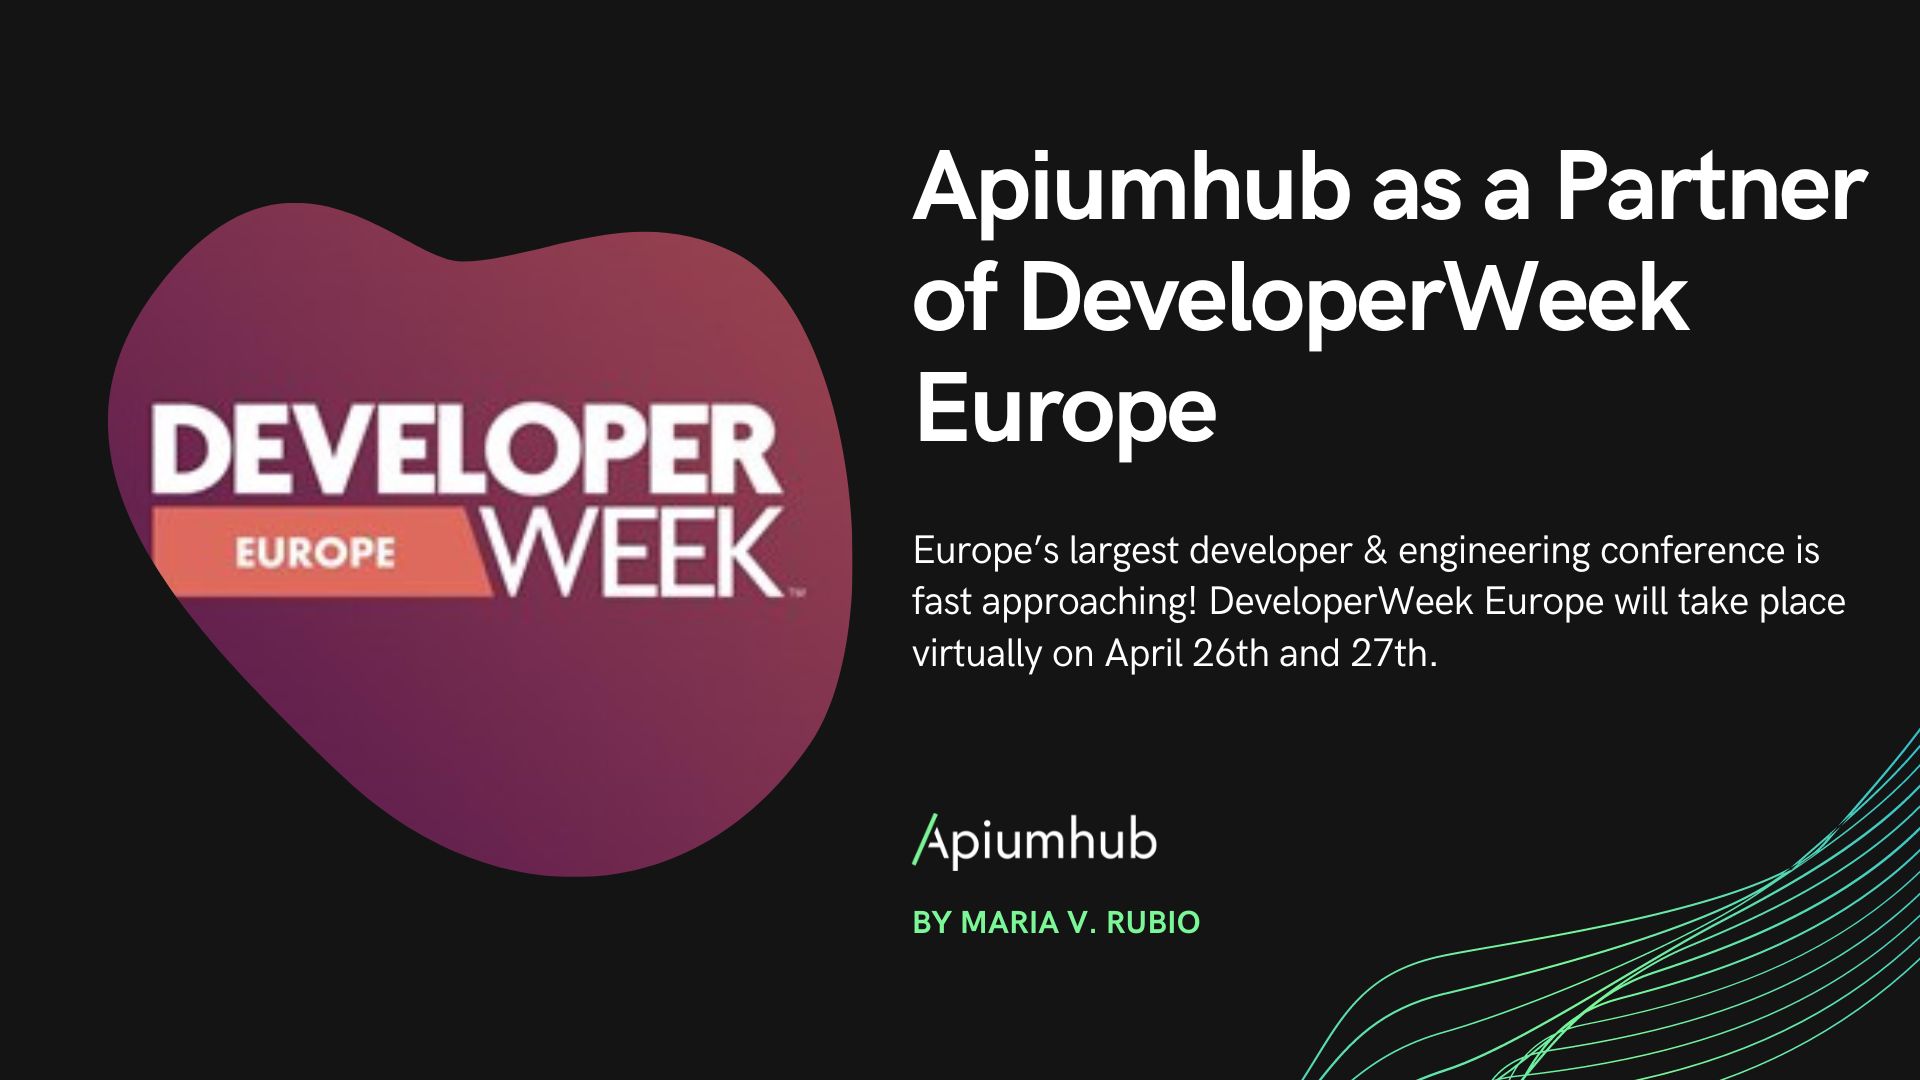 Apiumhub as a partner of DeveloperWeek Europe